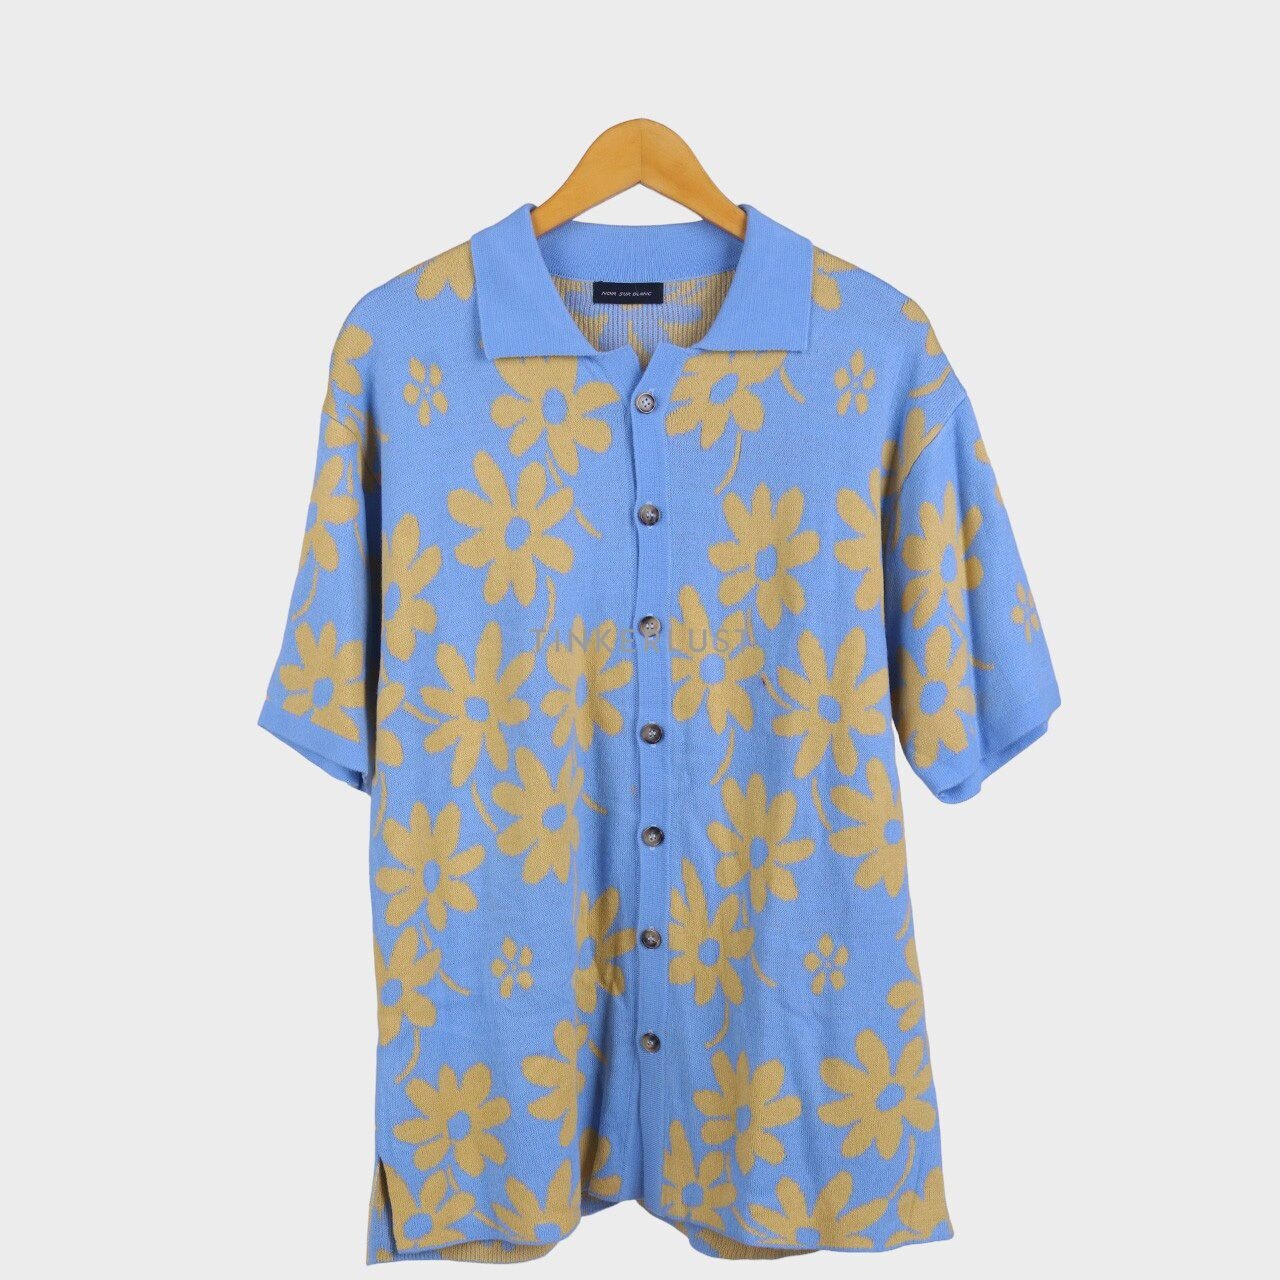 Noir Sur Blanc Blue & Yellow Floral Knit Shirt